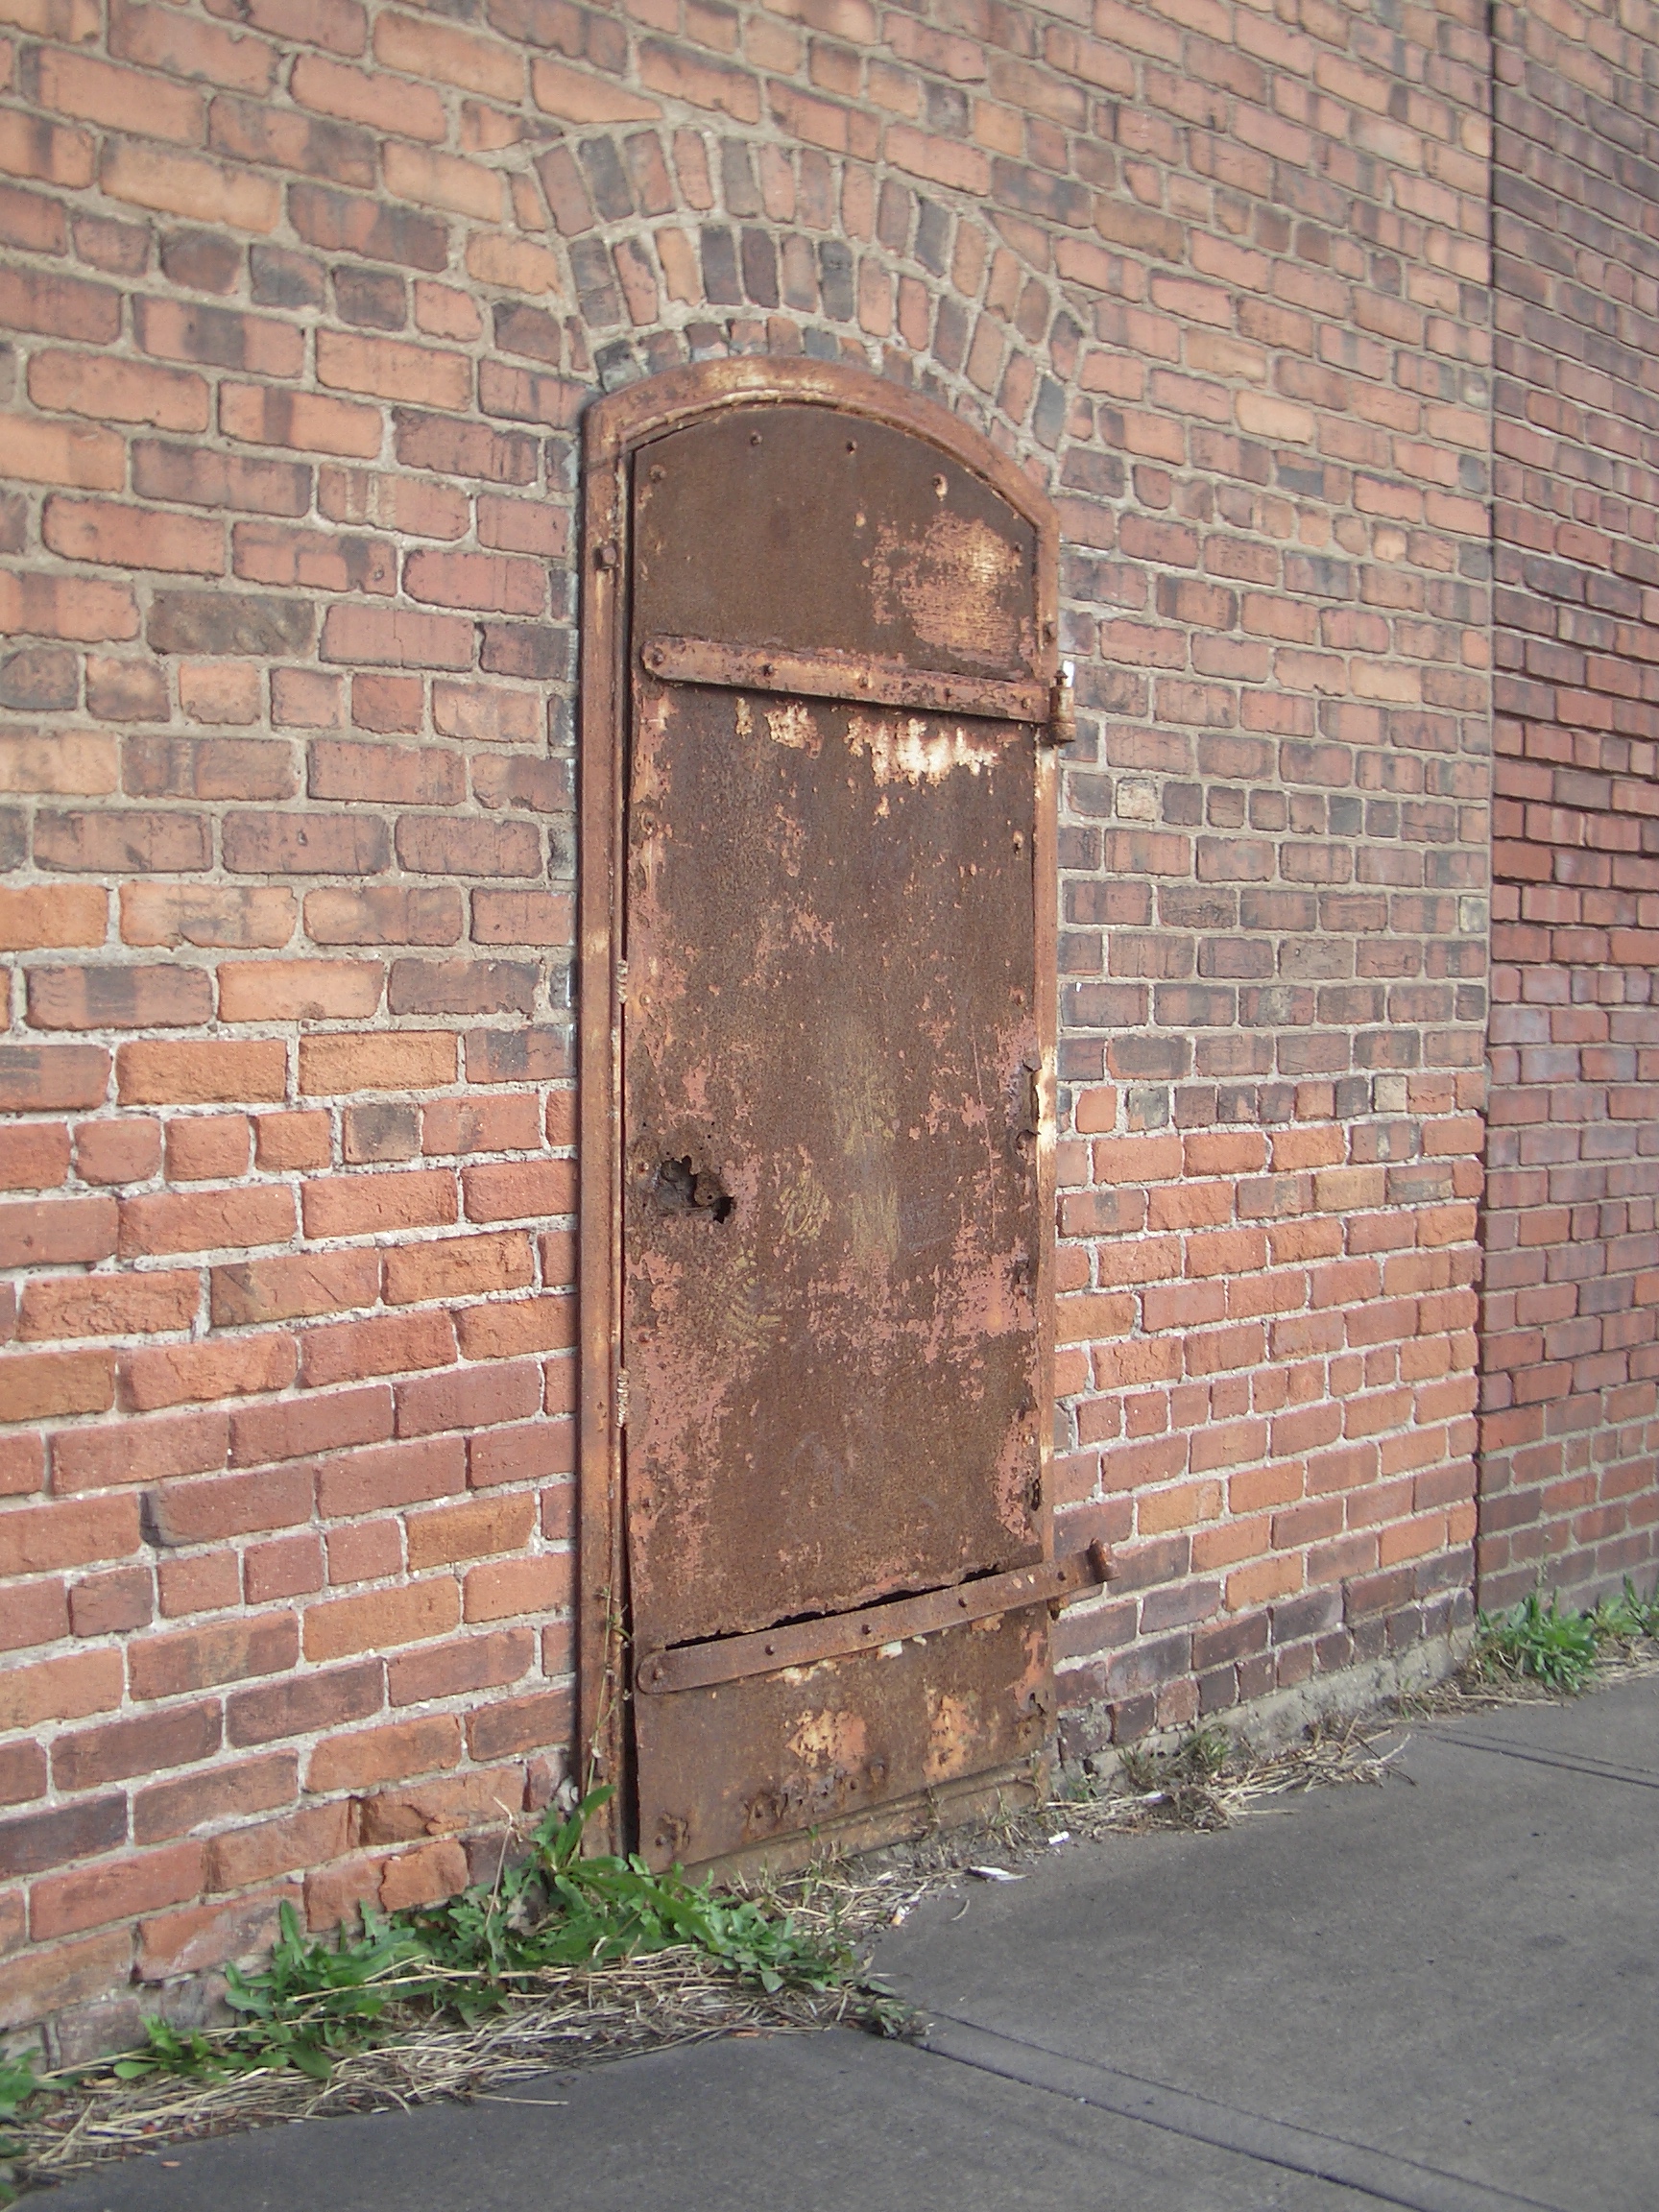 Rusty metal door in a brick wall [image 1728x2304 pixels]